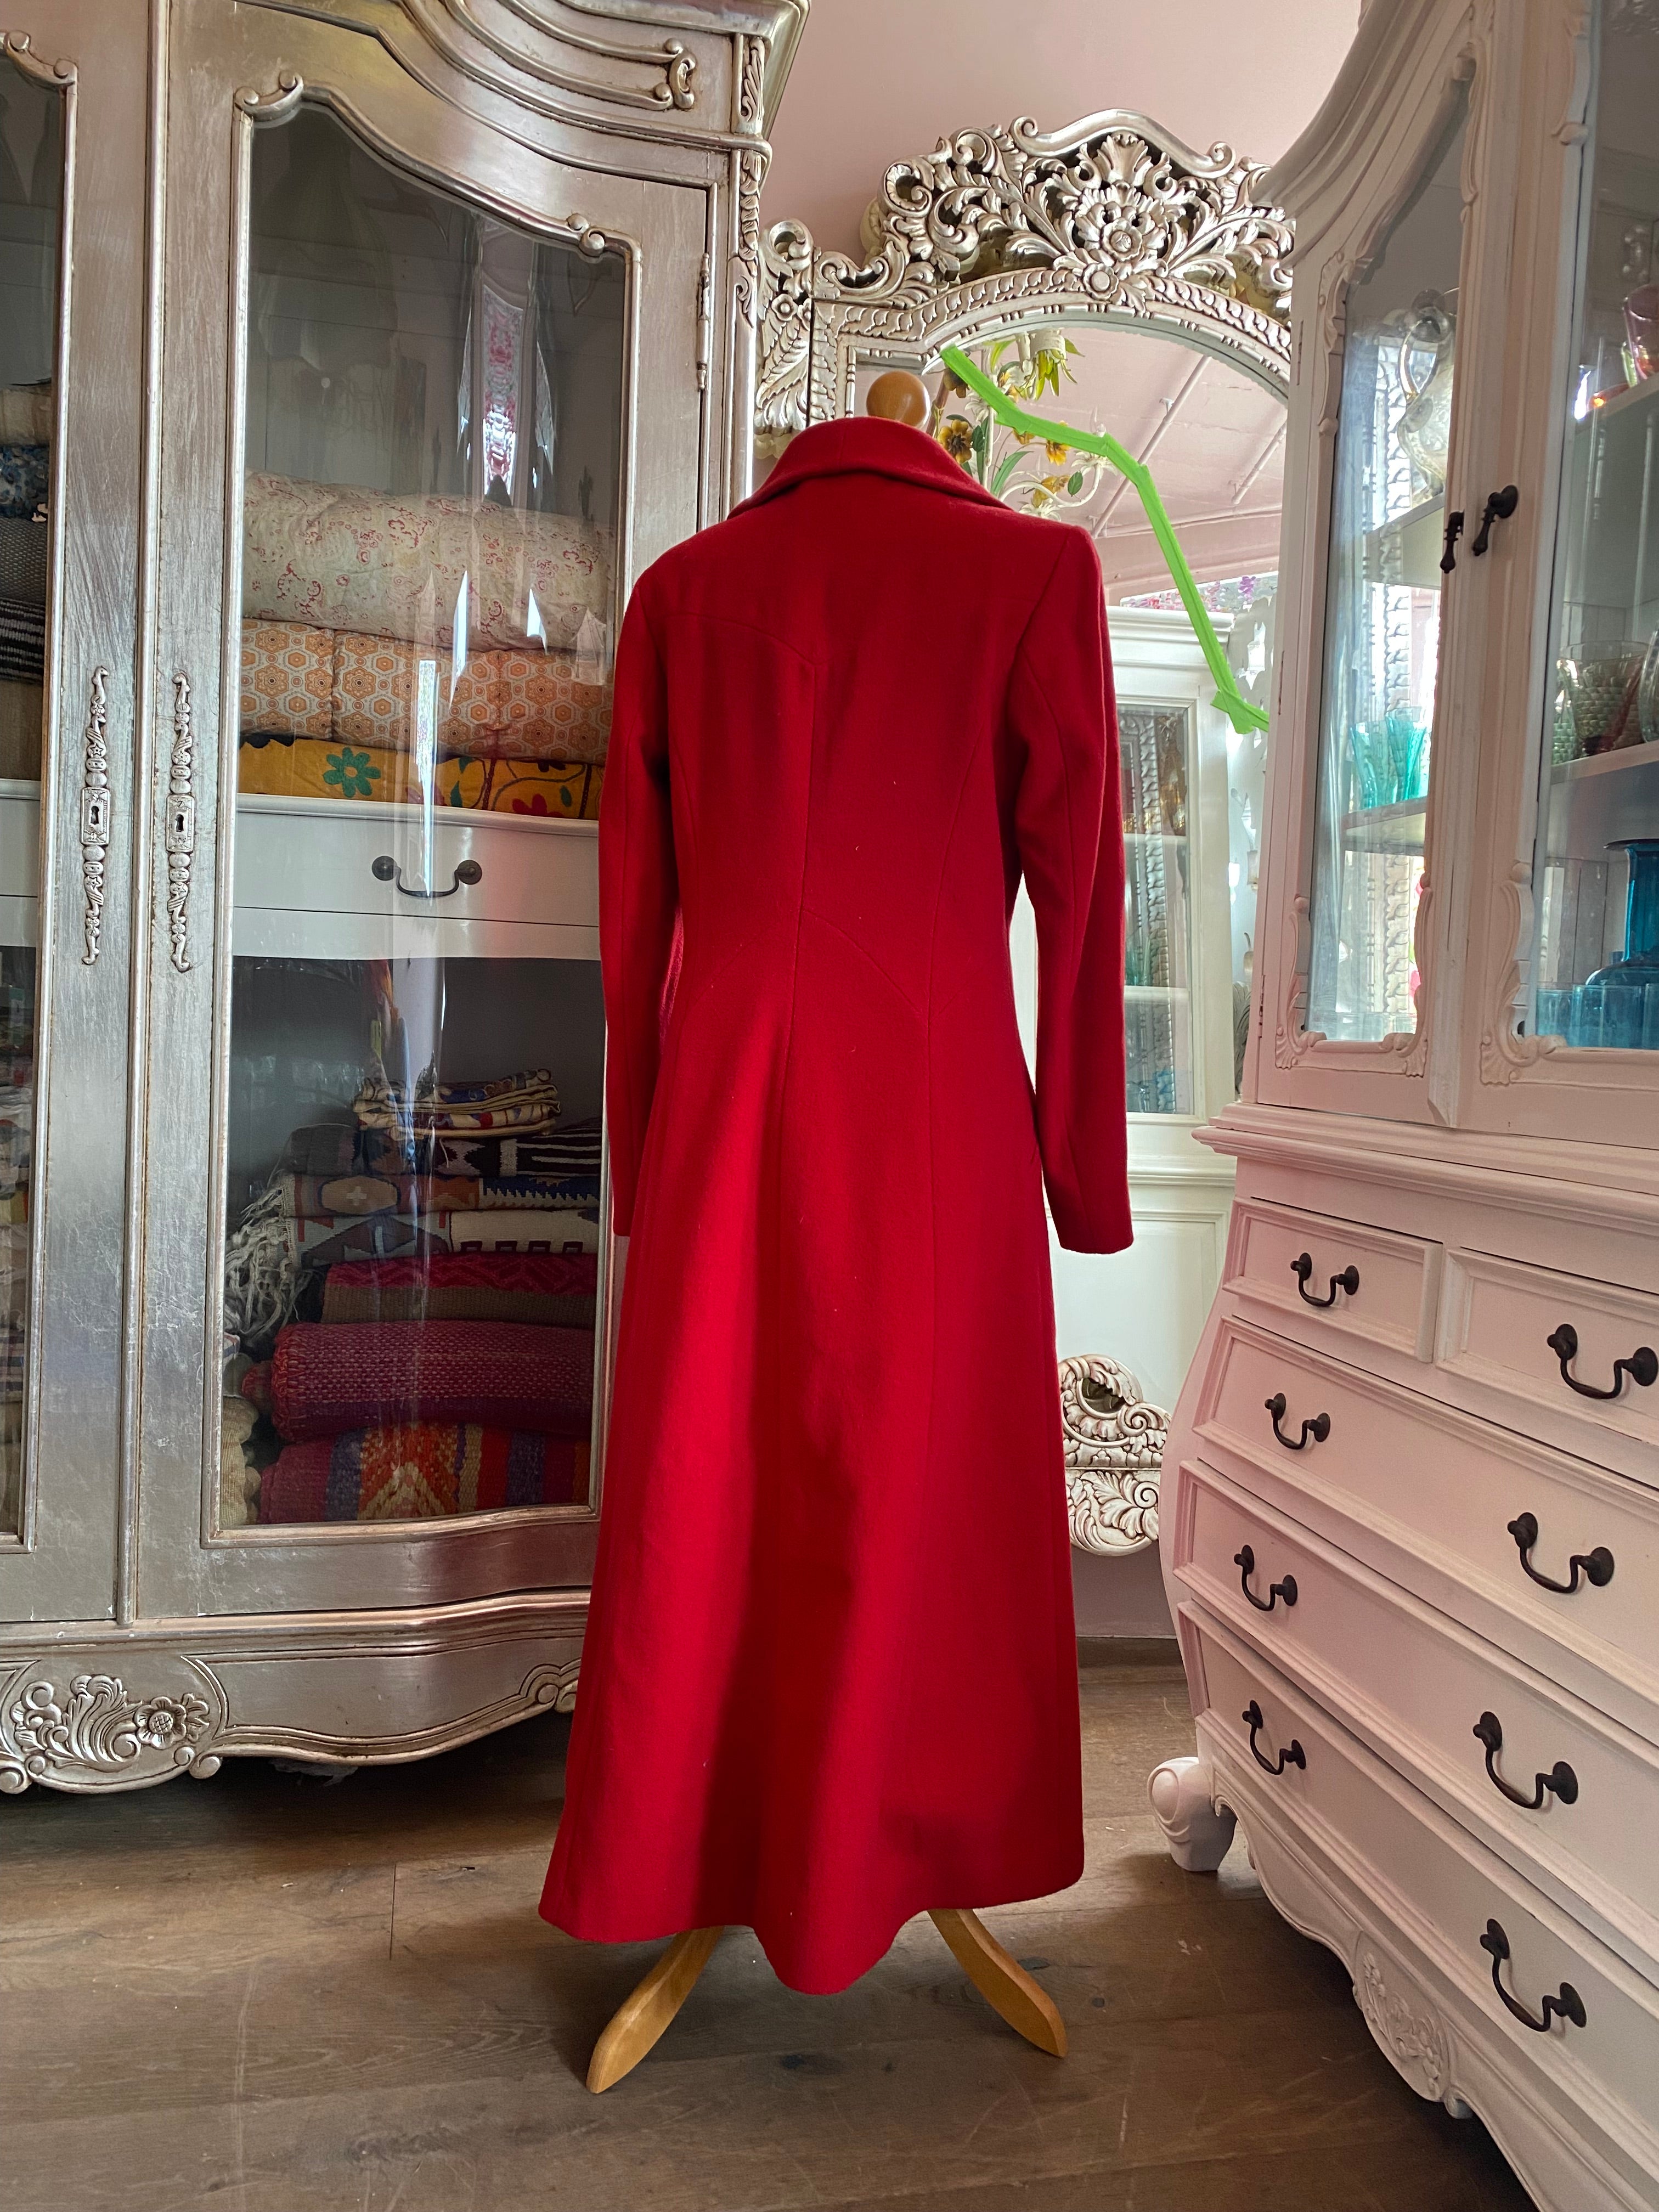 Berghaus Red Coat